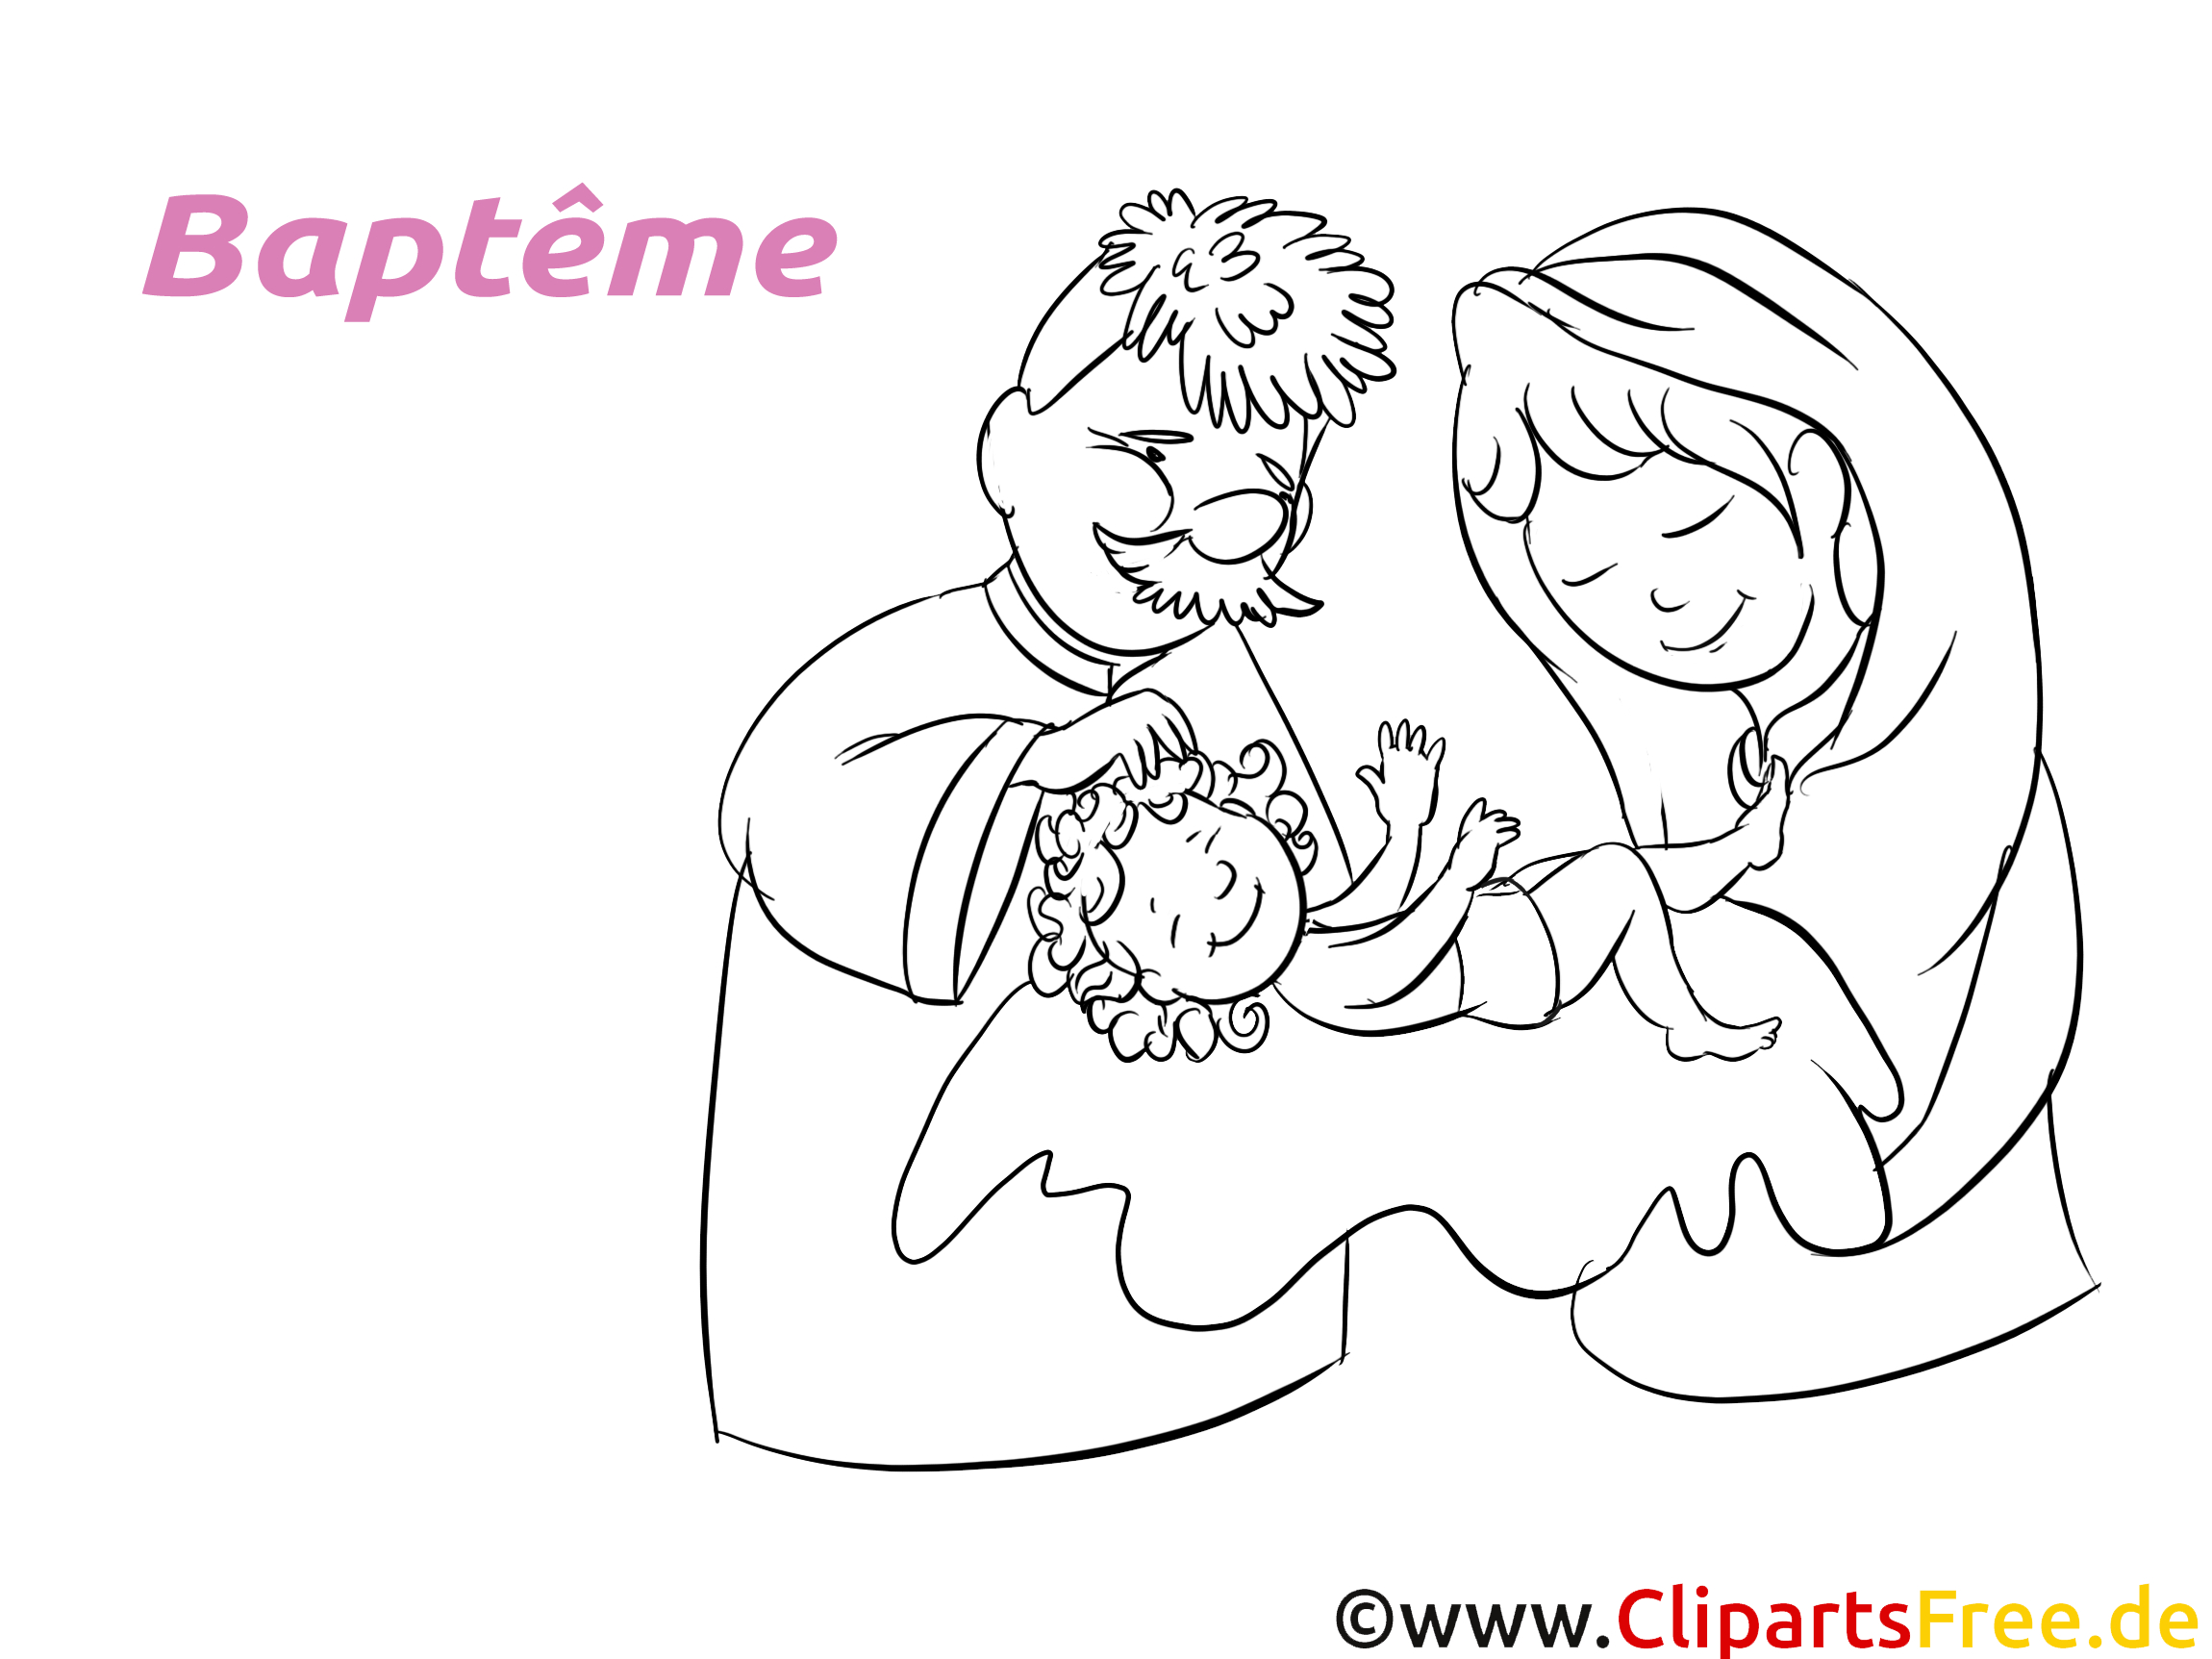 Parents Image À Imprimer - Baptême Cliparts - Baptême Dessin, Picture intérieur Dessin De Bapteme A Imprimer 